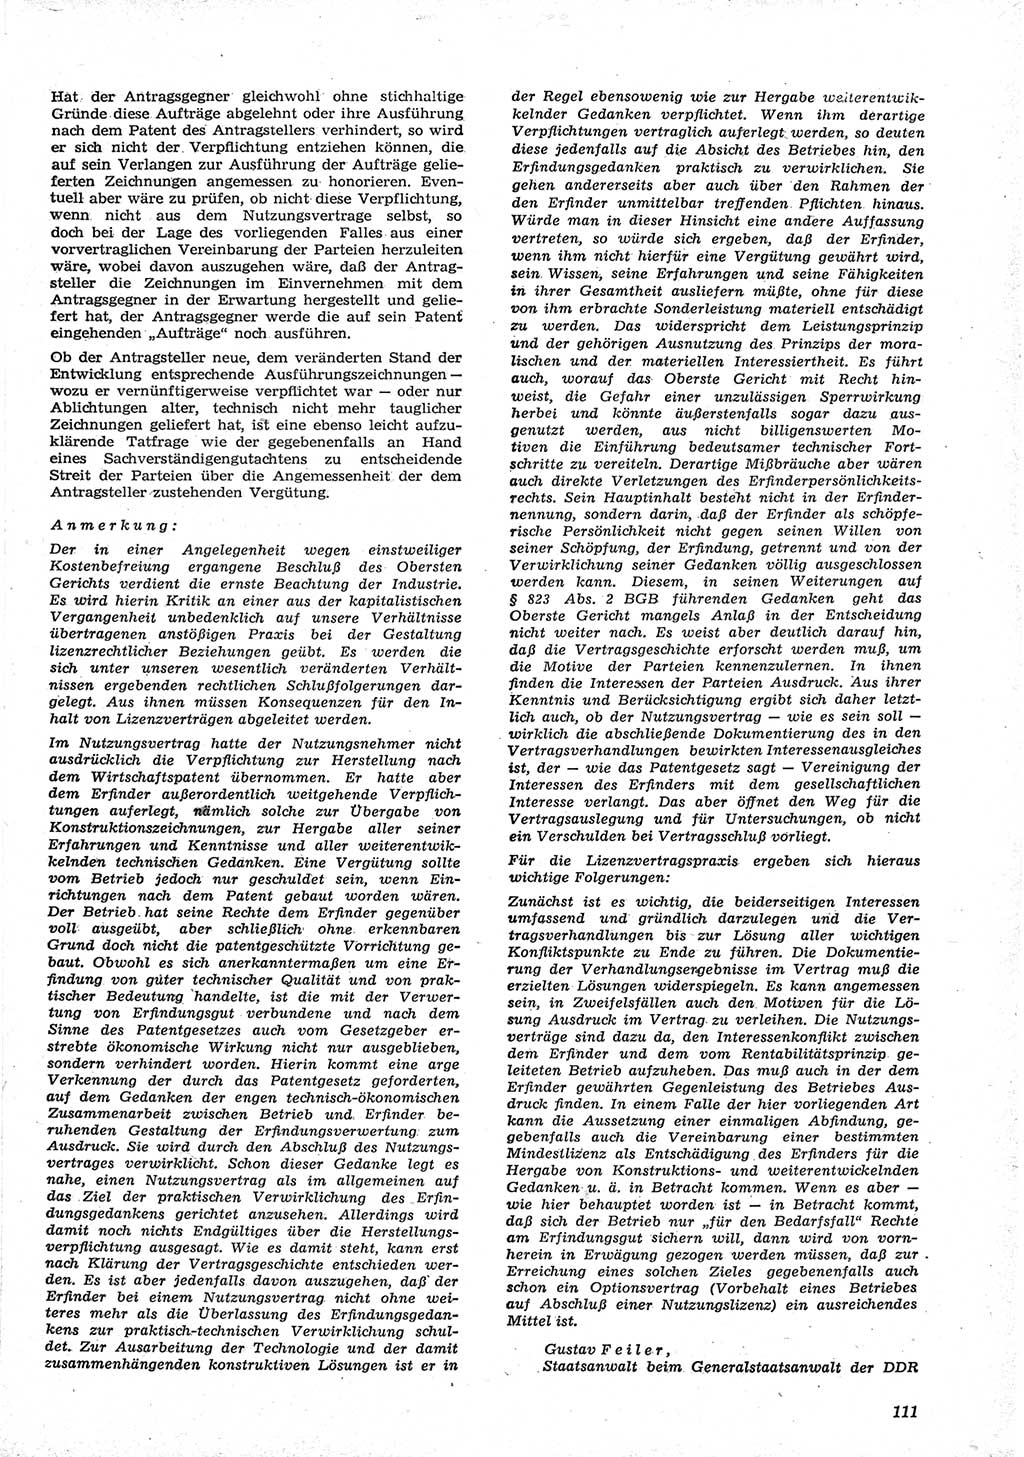 Neue Justiz (NJ), Zeitschrift für Recht und Rechtswissenschaft [Deutsche Demokratische Republik (DDR)], 15. Jahrgang 1961, Seite 111 (NJ DDR 1961, S. 111)